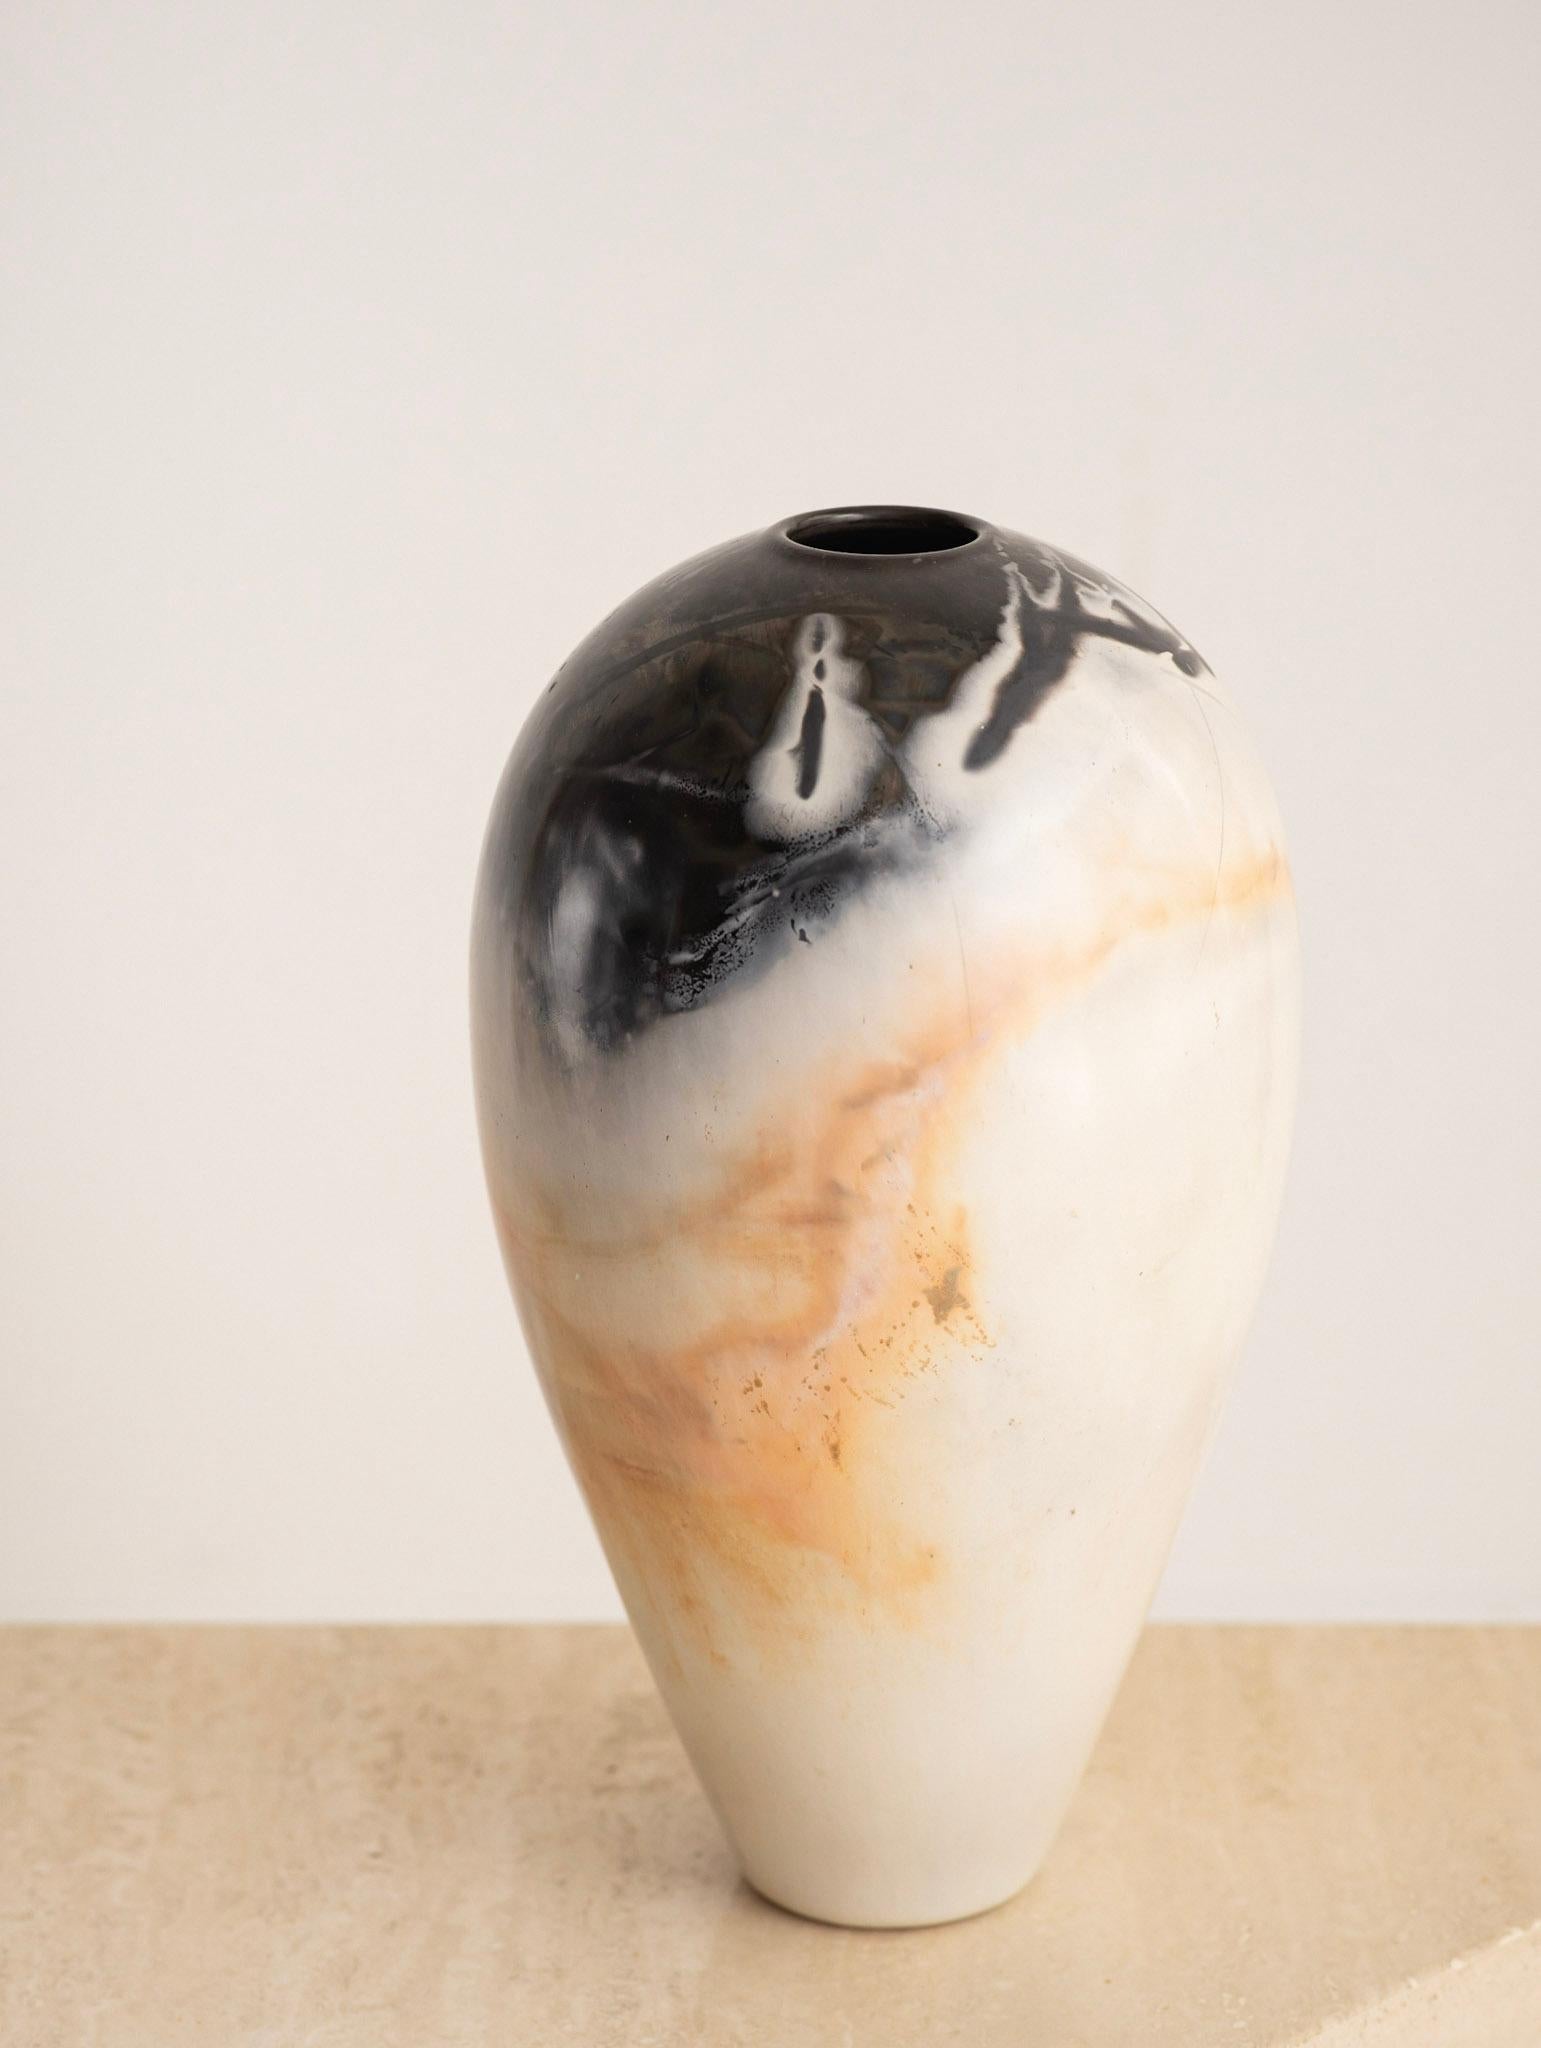 Rustic Scott Tubby Burnished & Saggar Fired Porcelain Vase